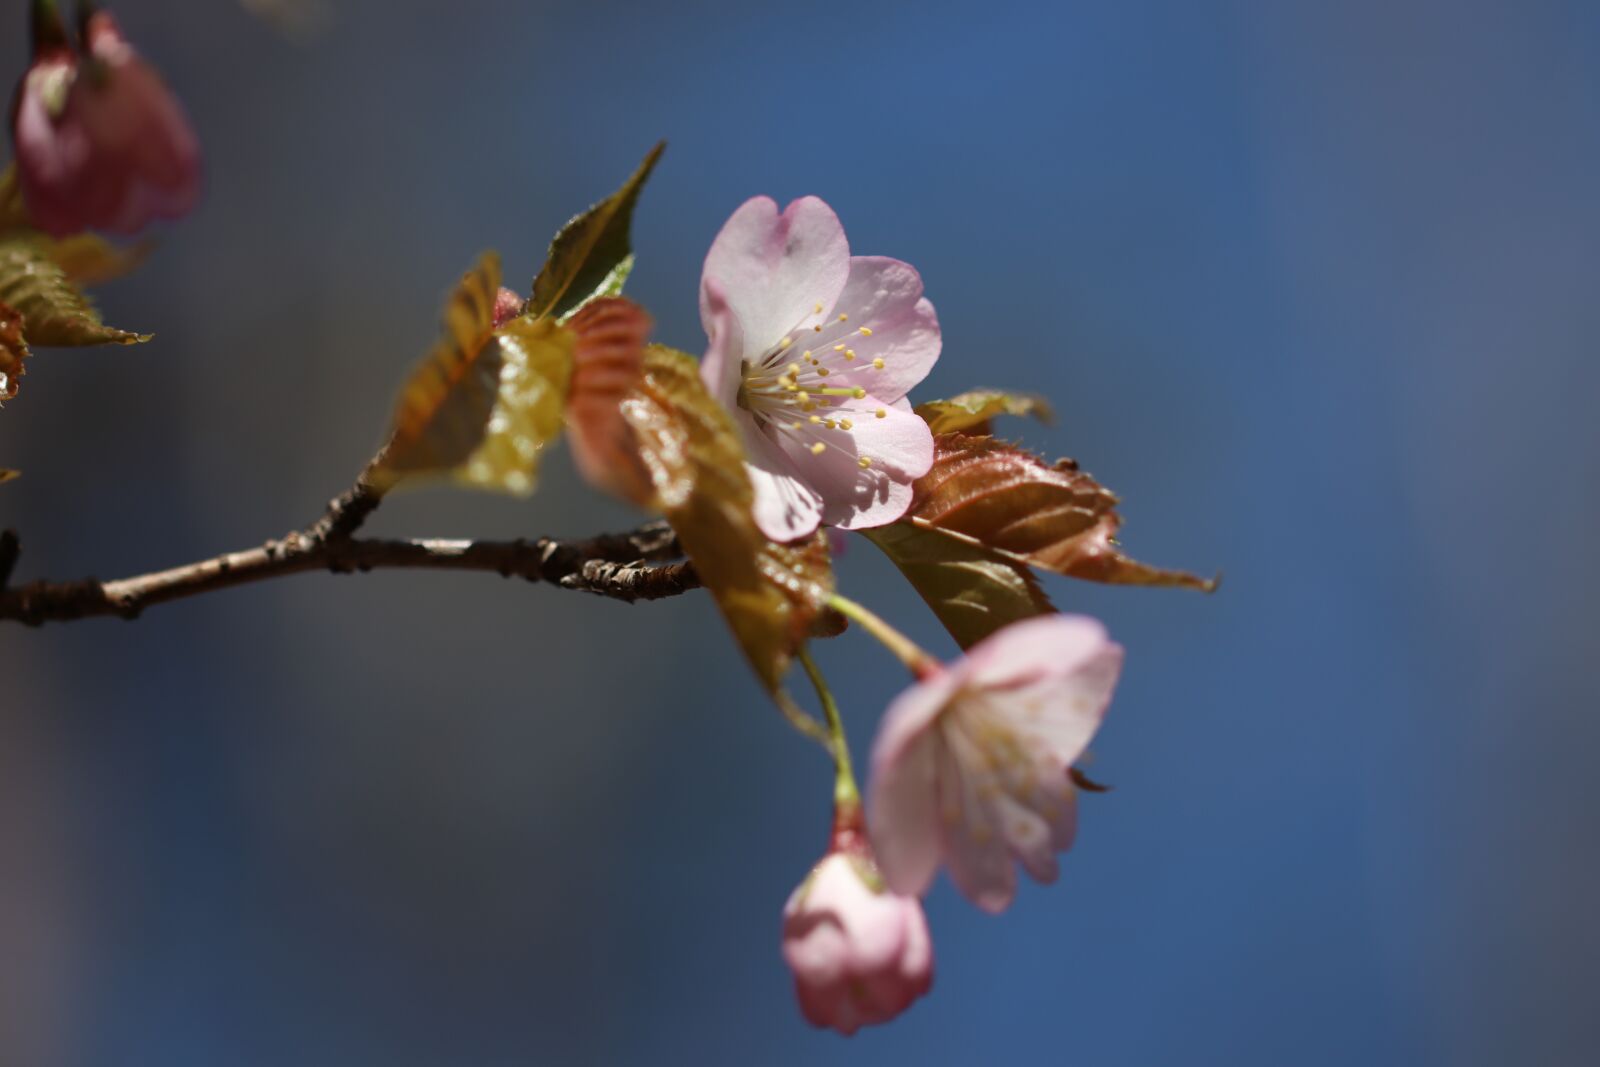 Canon EOS 80D sample photo. Flower, spring, sakura photography